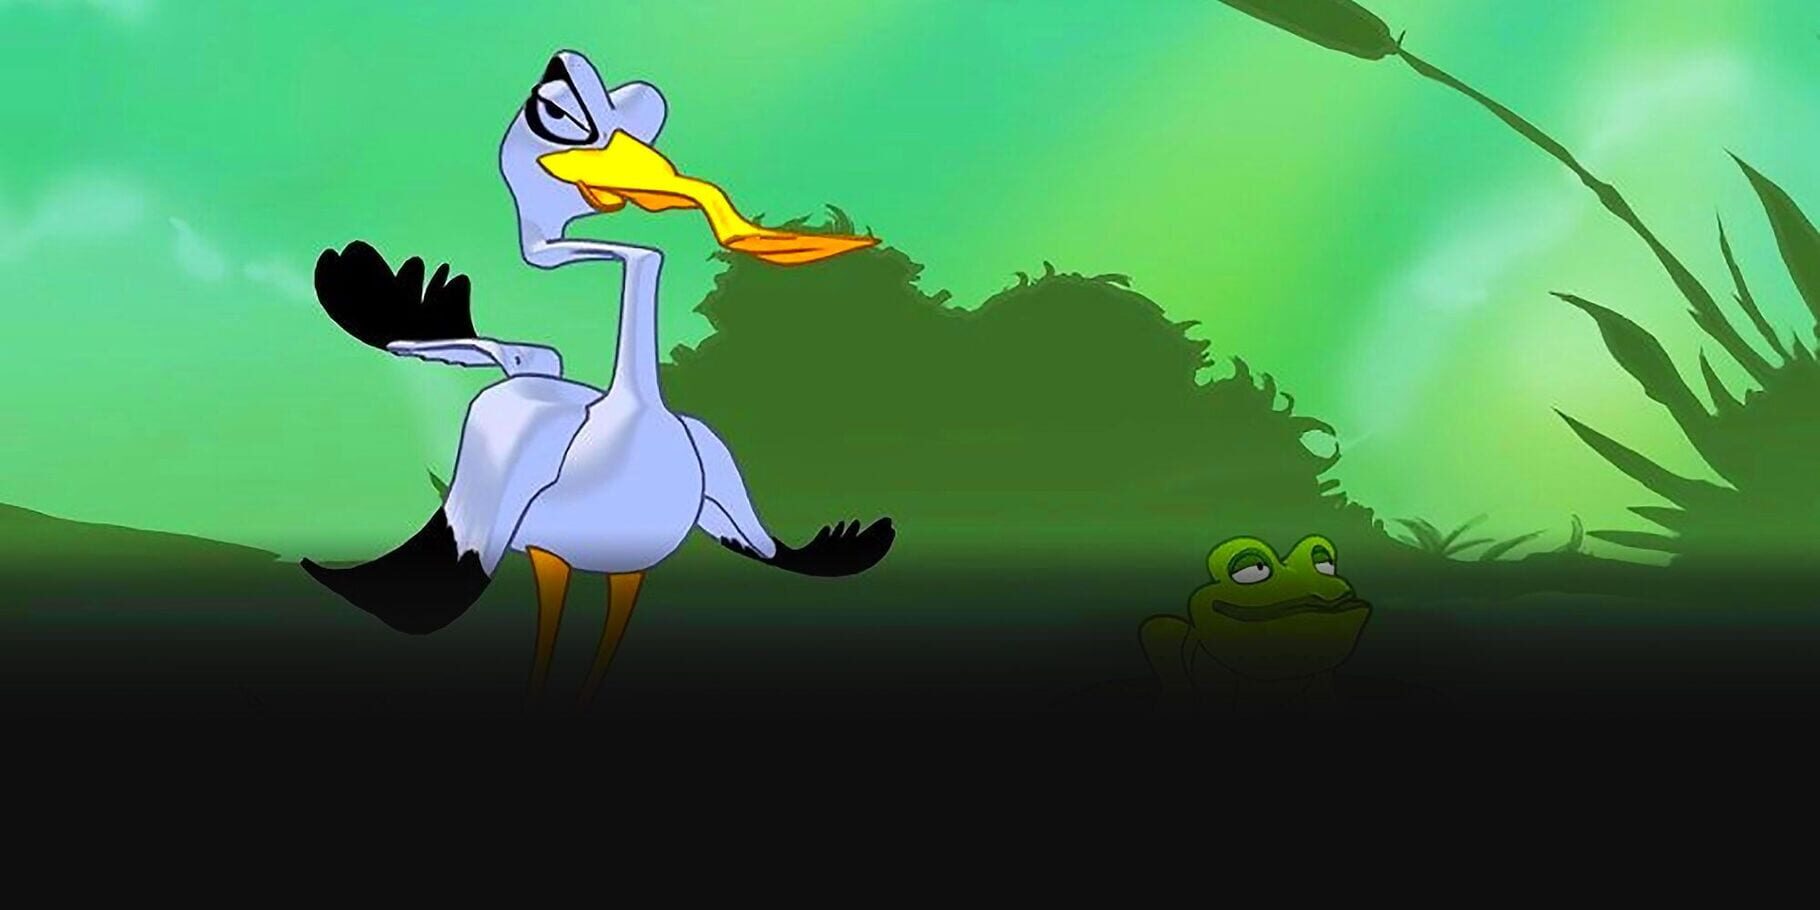 Frogs vs. Storks artwork